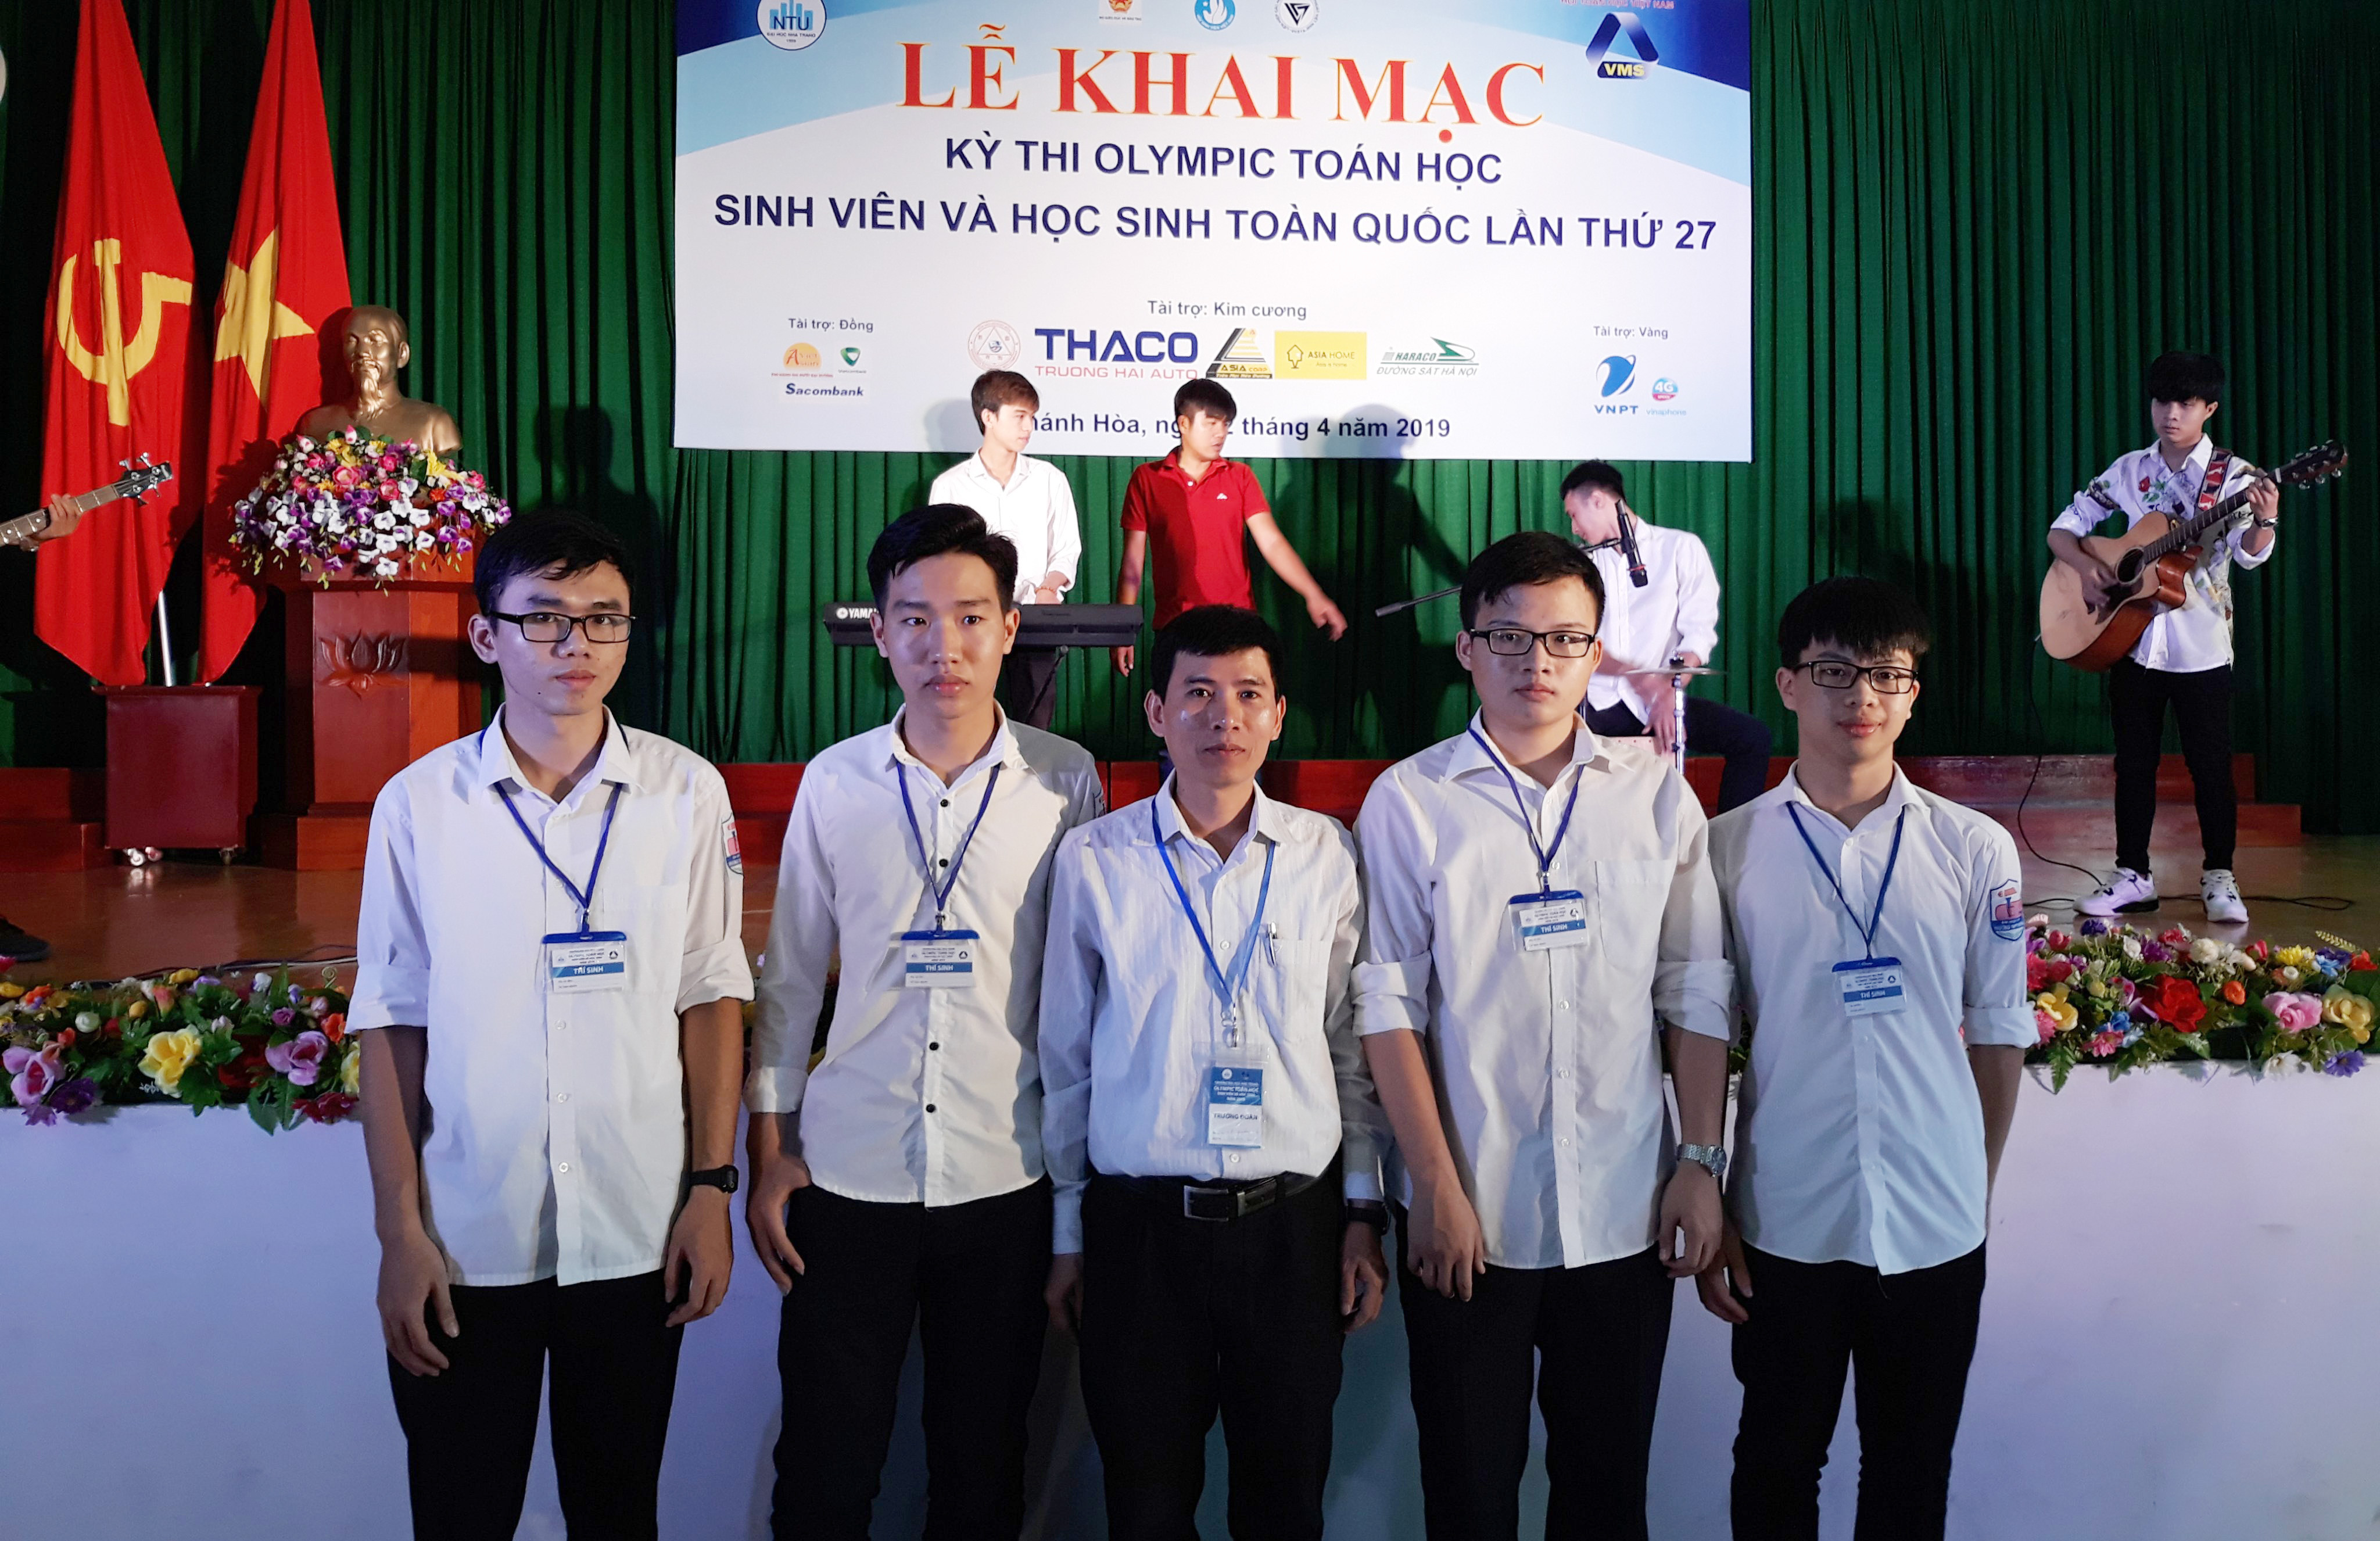 Thầy giáo Lê Xuân Sơn và các học trò tại Kỳ thi Olympic Toán học sinh viên và học sinh toàn quốc. Ảnh: MH